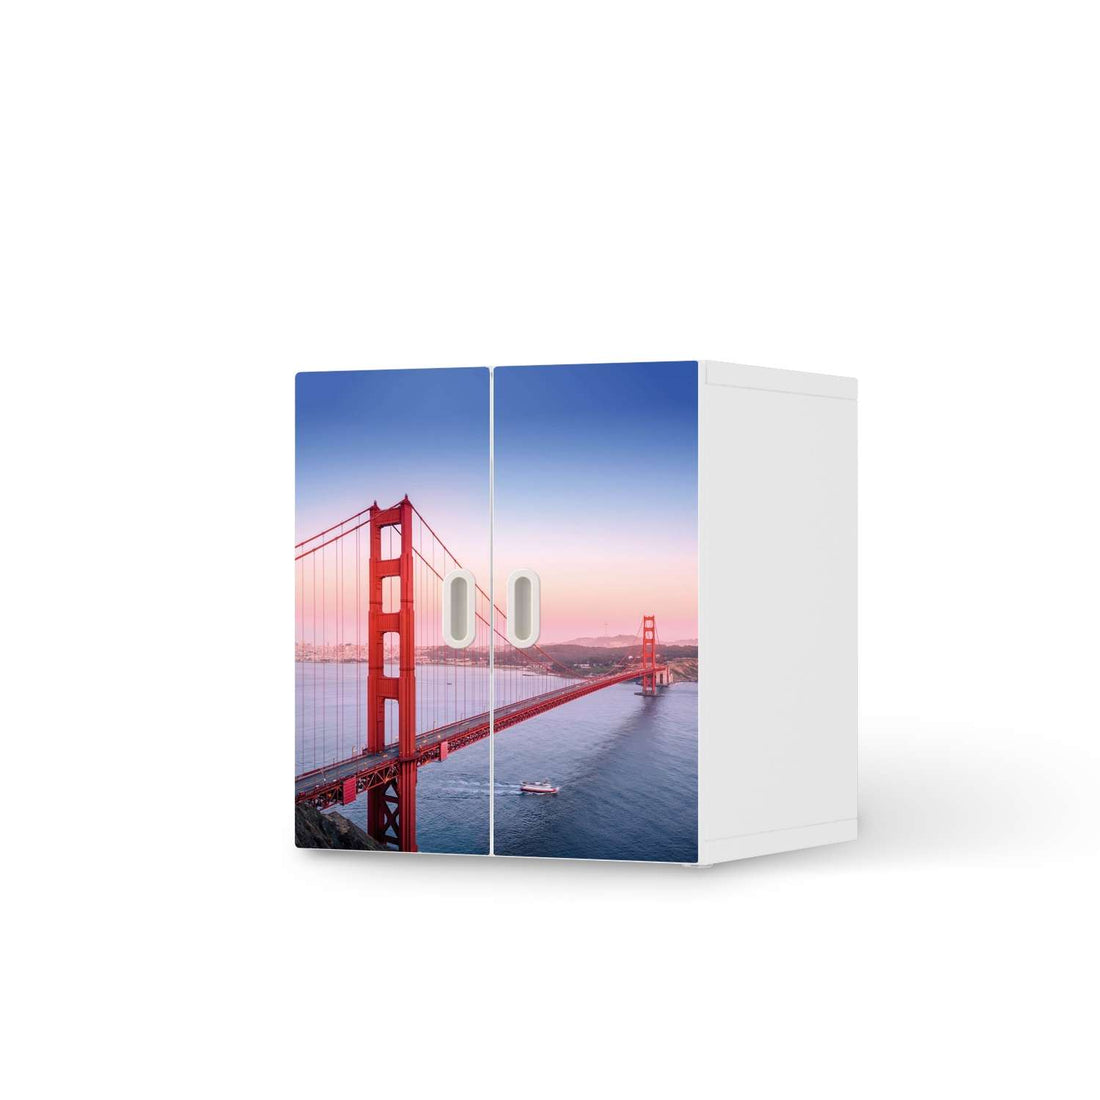 Selbstklebende Folie Golden Gate - IKEA Stuva / Fritids Schrank - 2 kleine Türen  - weiss